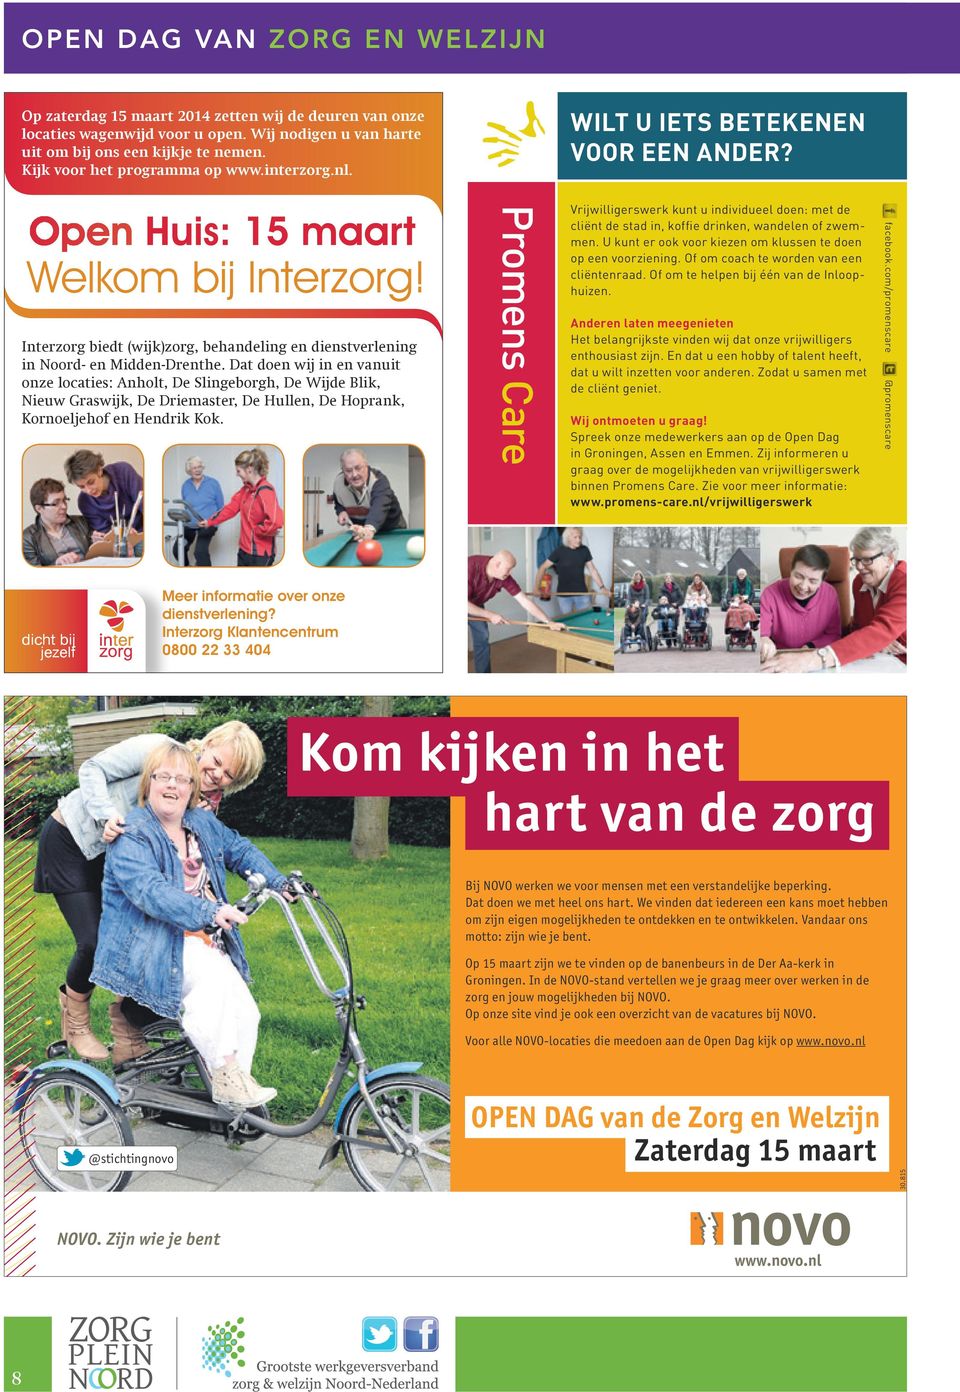 Interzorg biedt (wijk)zorg, behandeling en dienstverlening in Noord- en Midden-Drenthe.